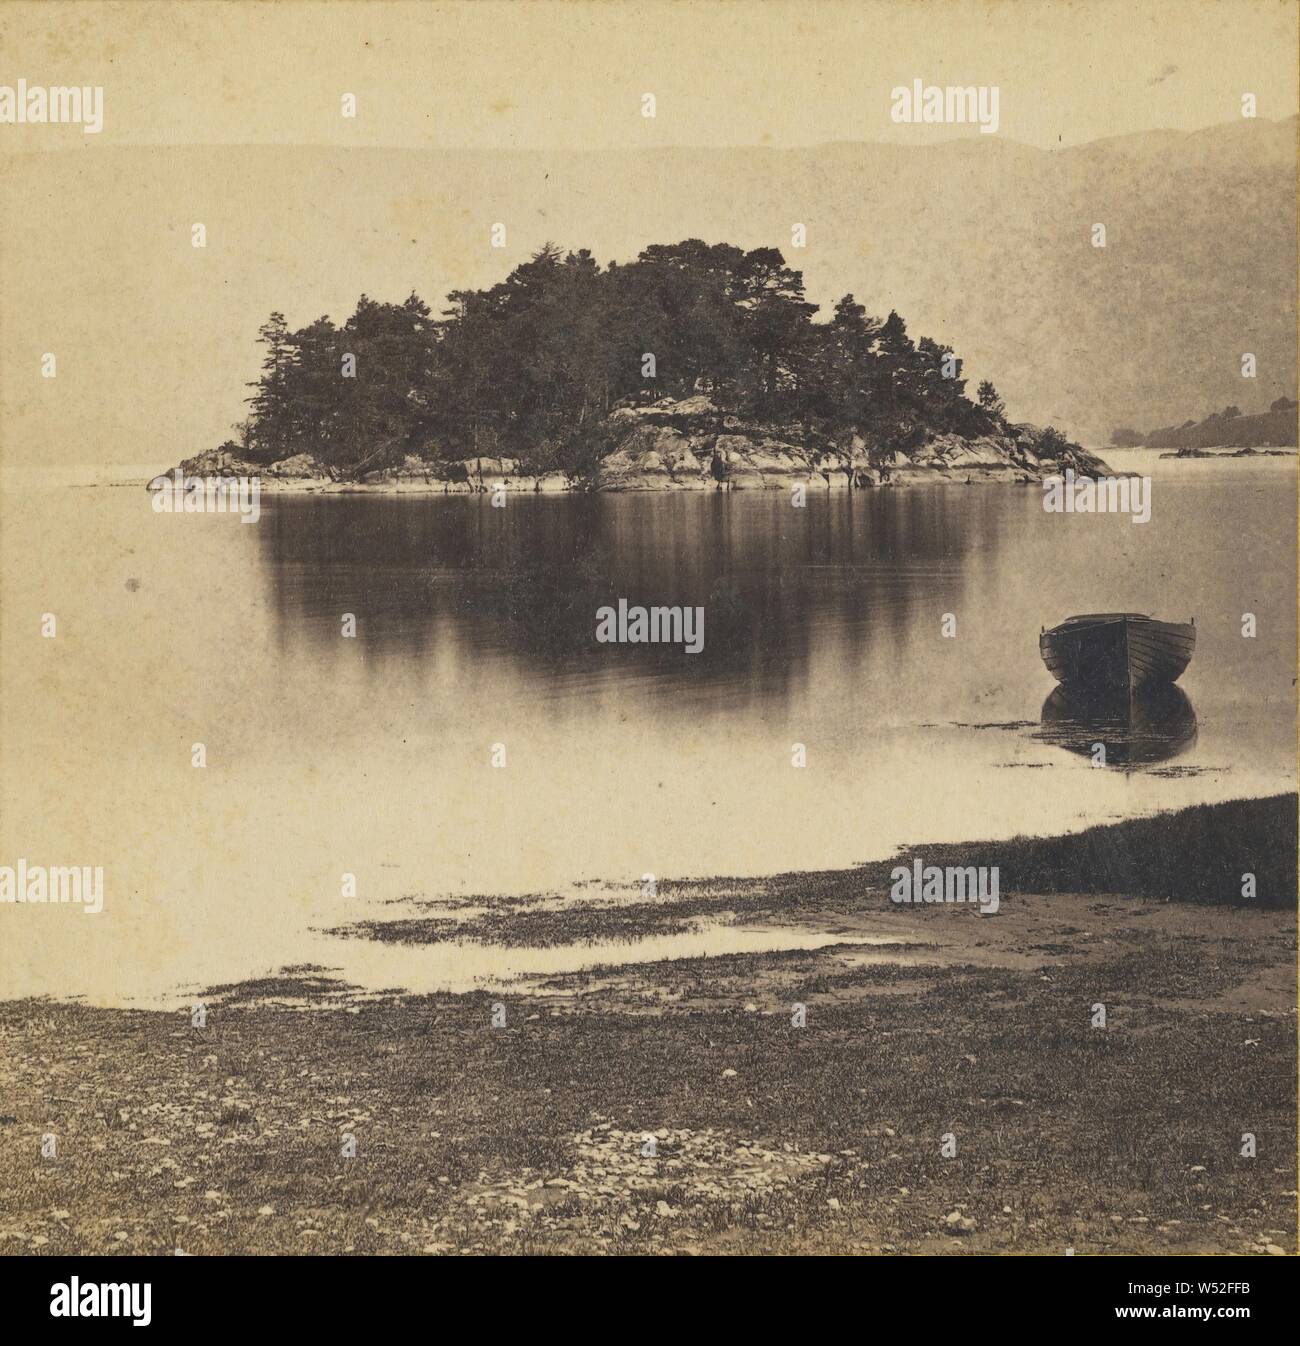 La Isla de brezo, Loch Lomond, James Valentine (Escocia, 1815 - 1879), hacia 1870, la albúmina imprimir plata Foto de stock